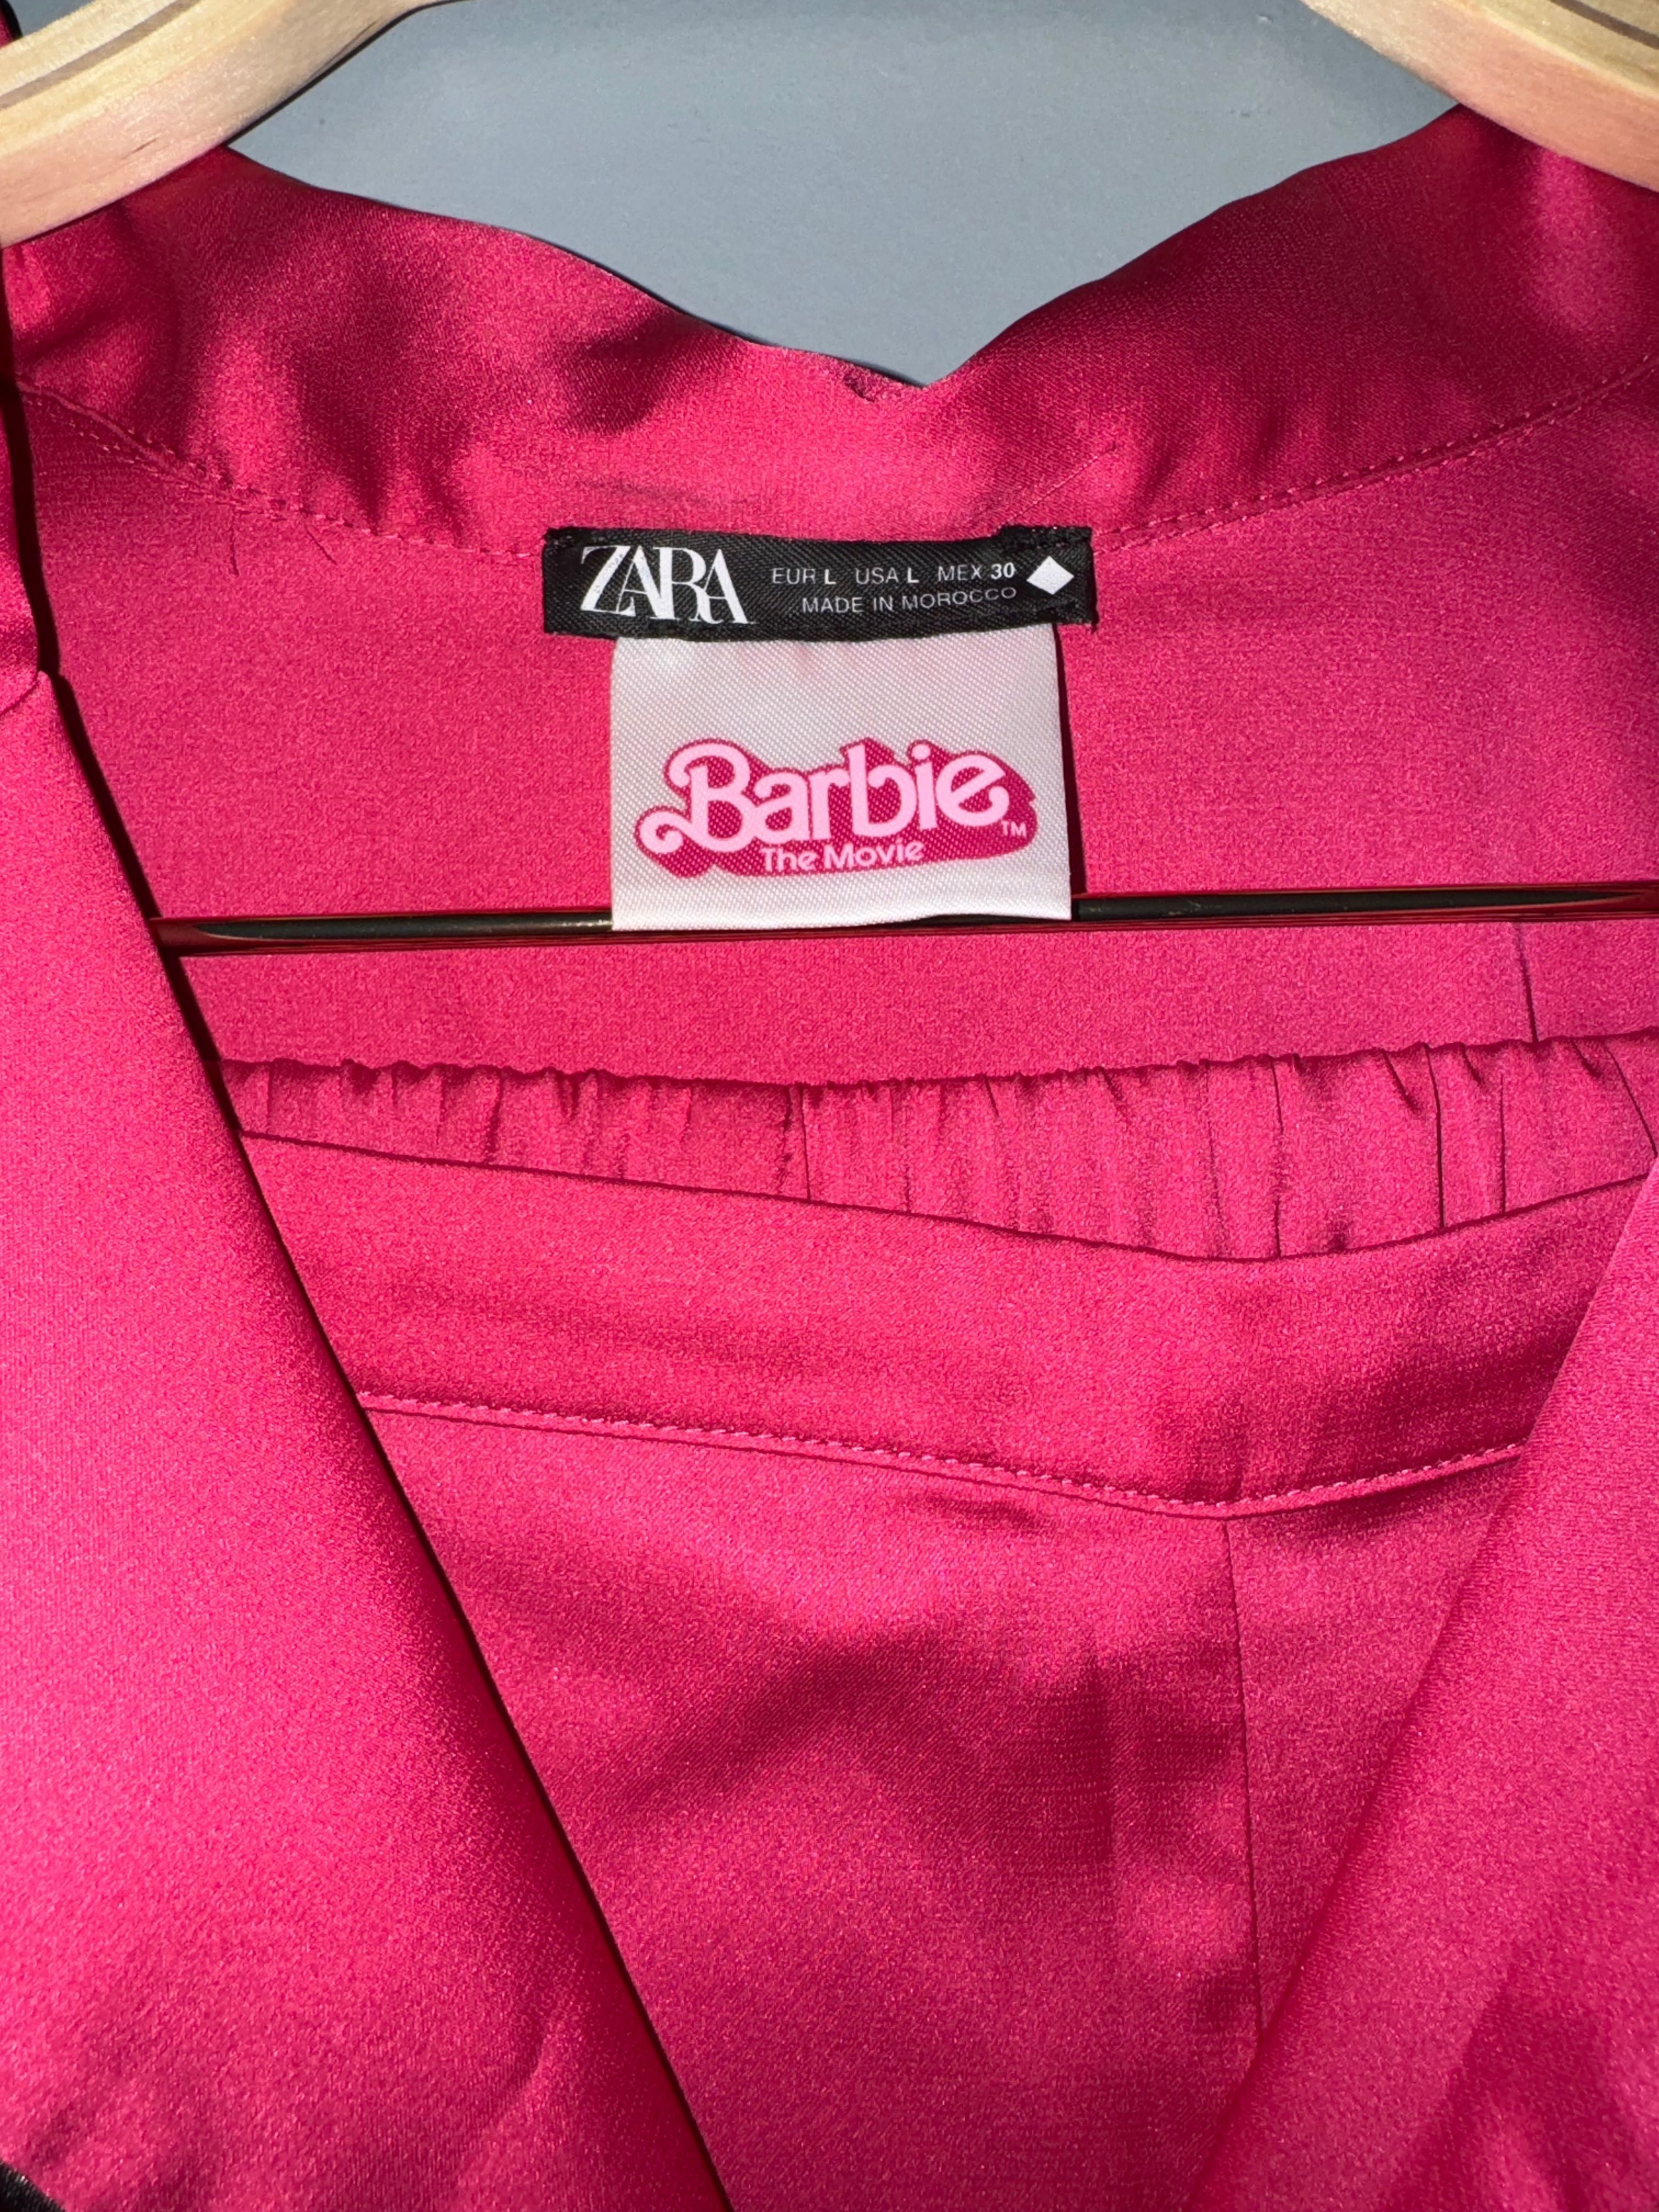 Піжама Zara колекція Barbie L